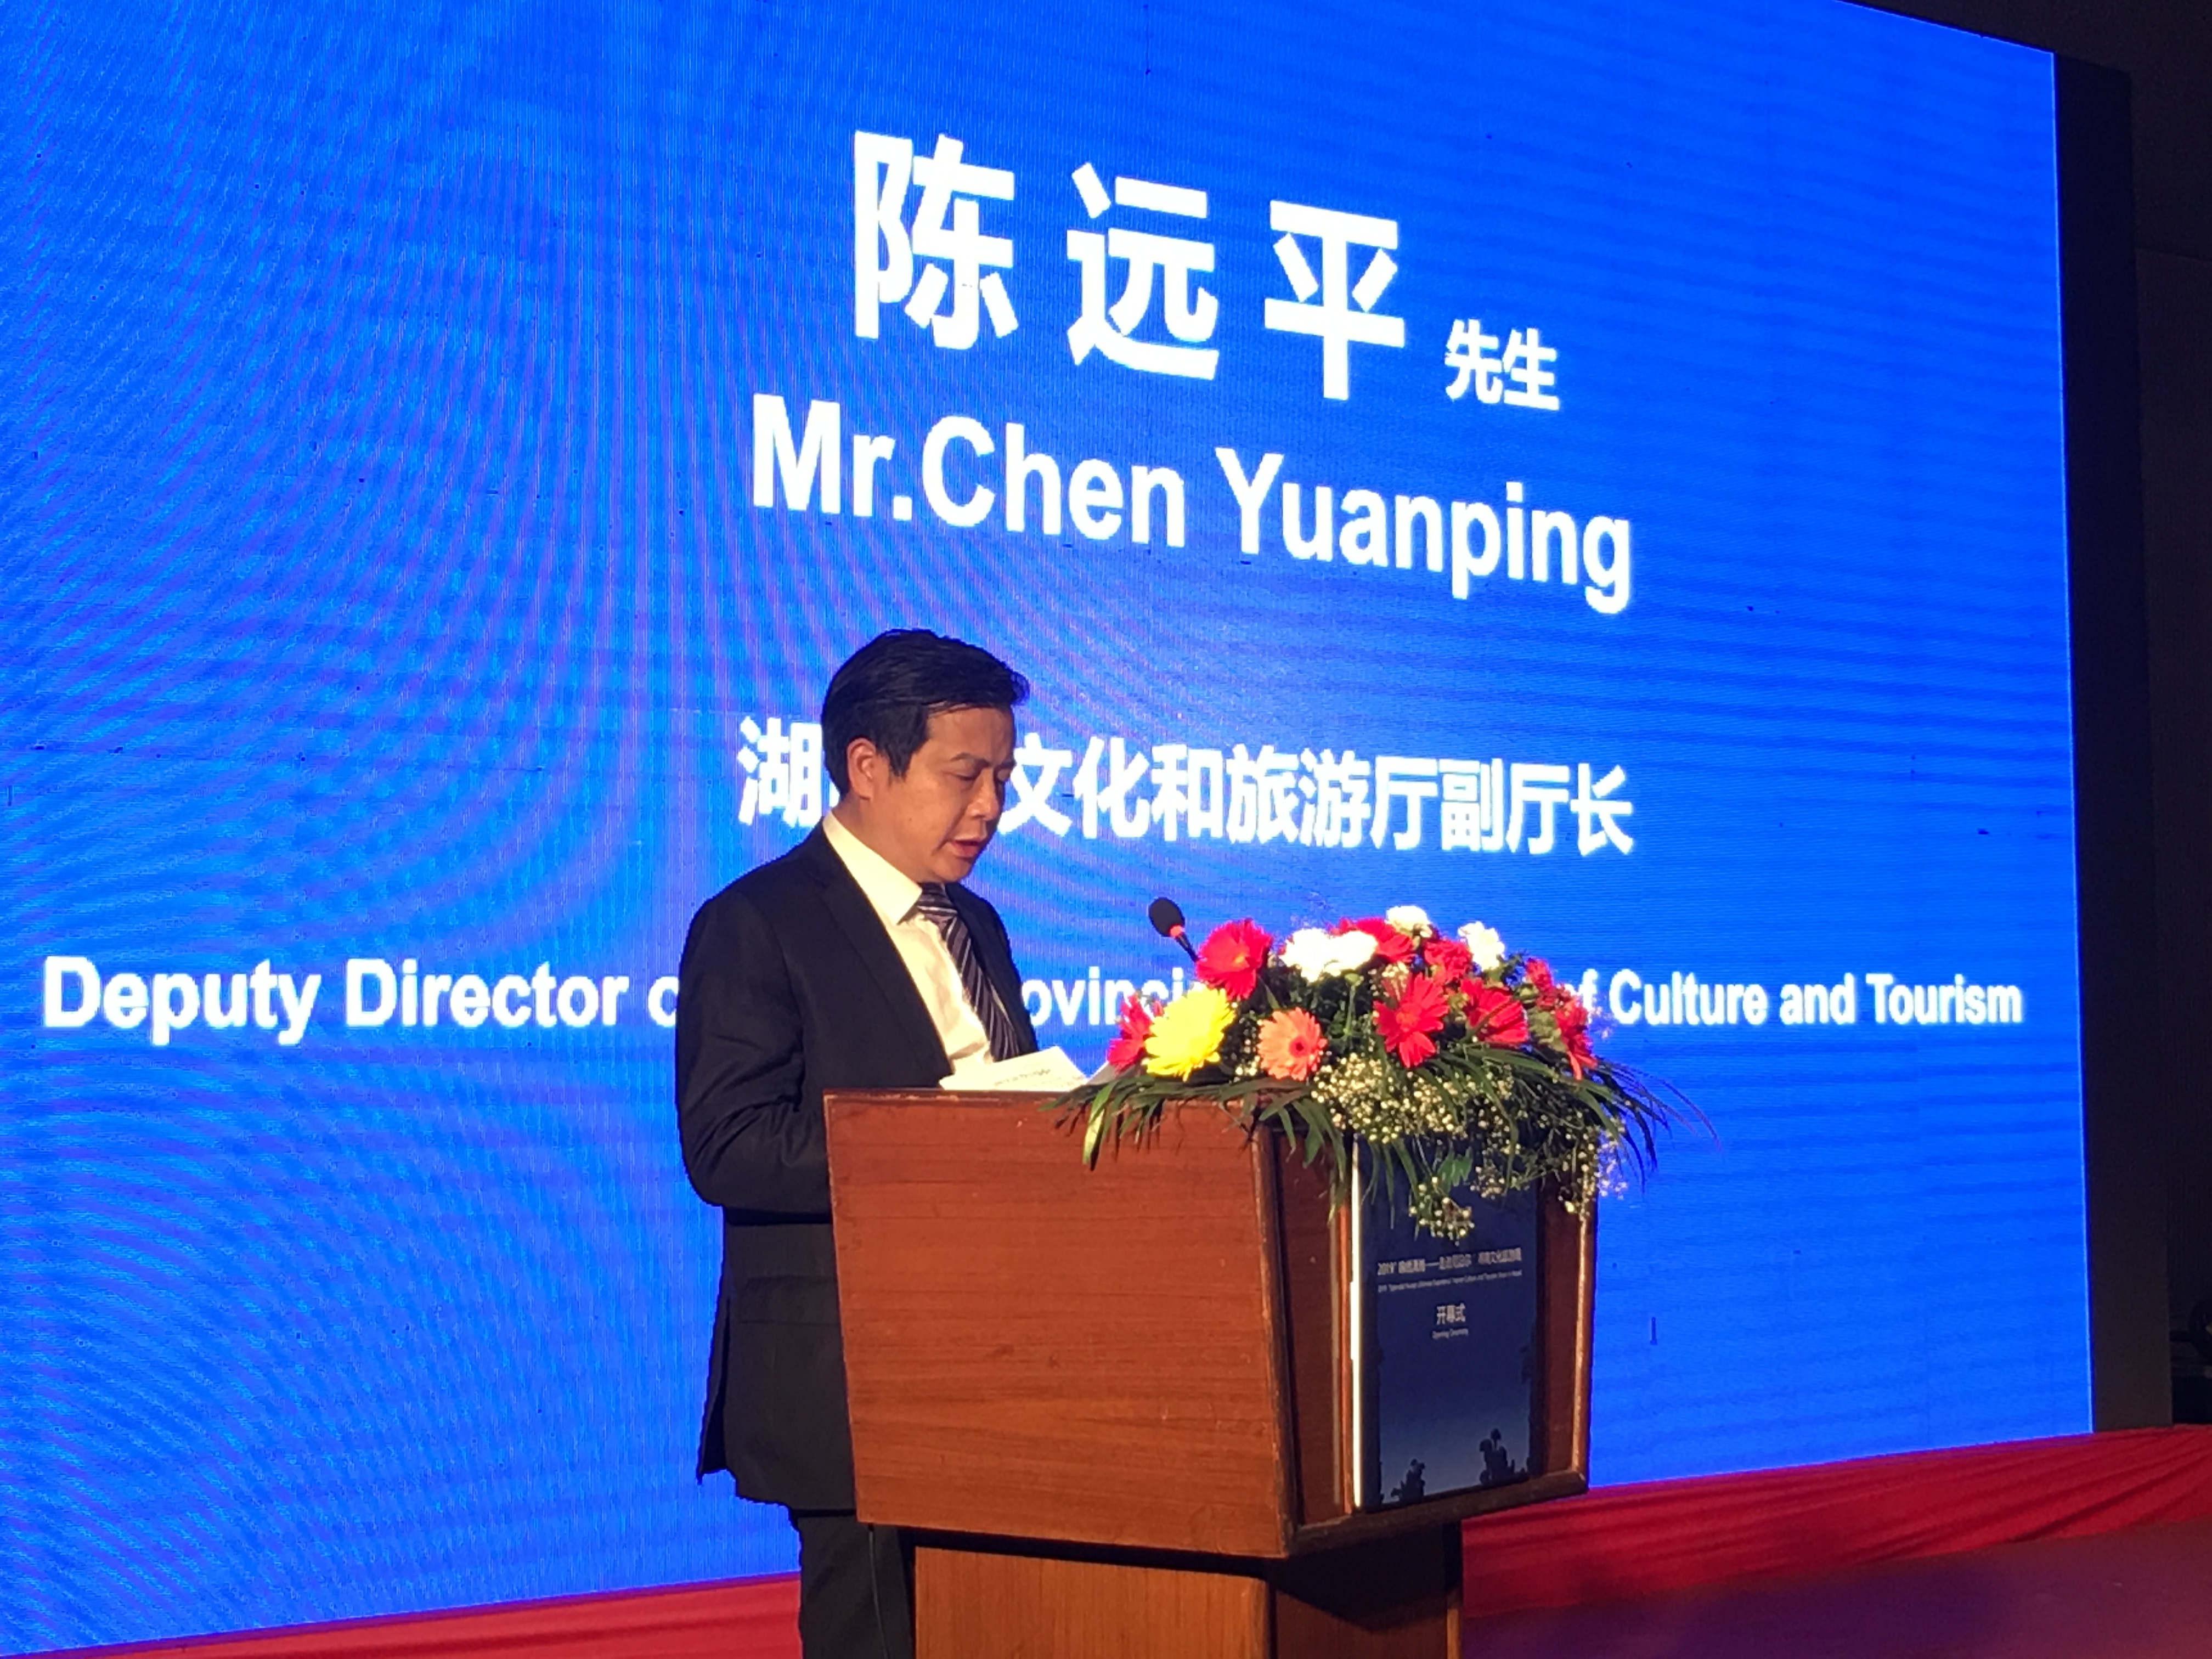 湖南省文化和旅游厅副厅长陈远平在开幕式上致辞。